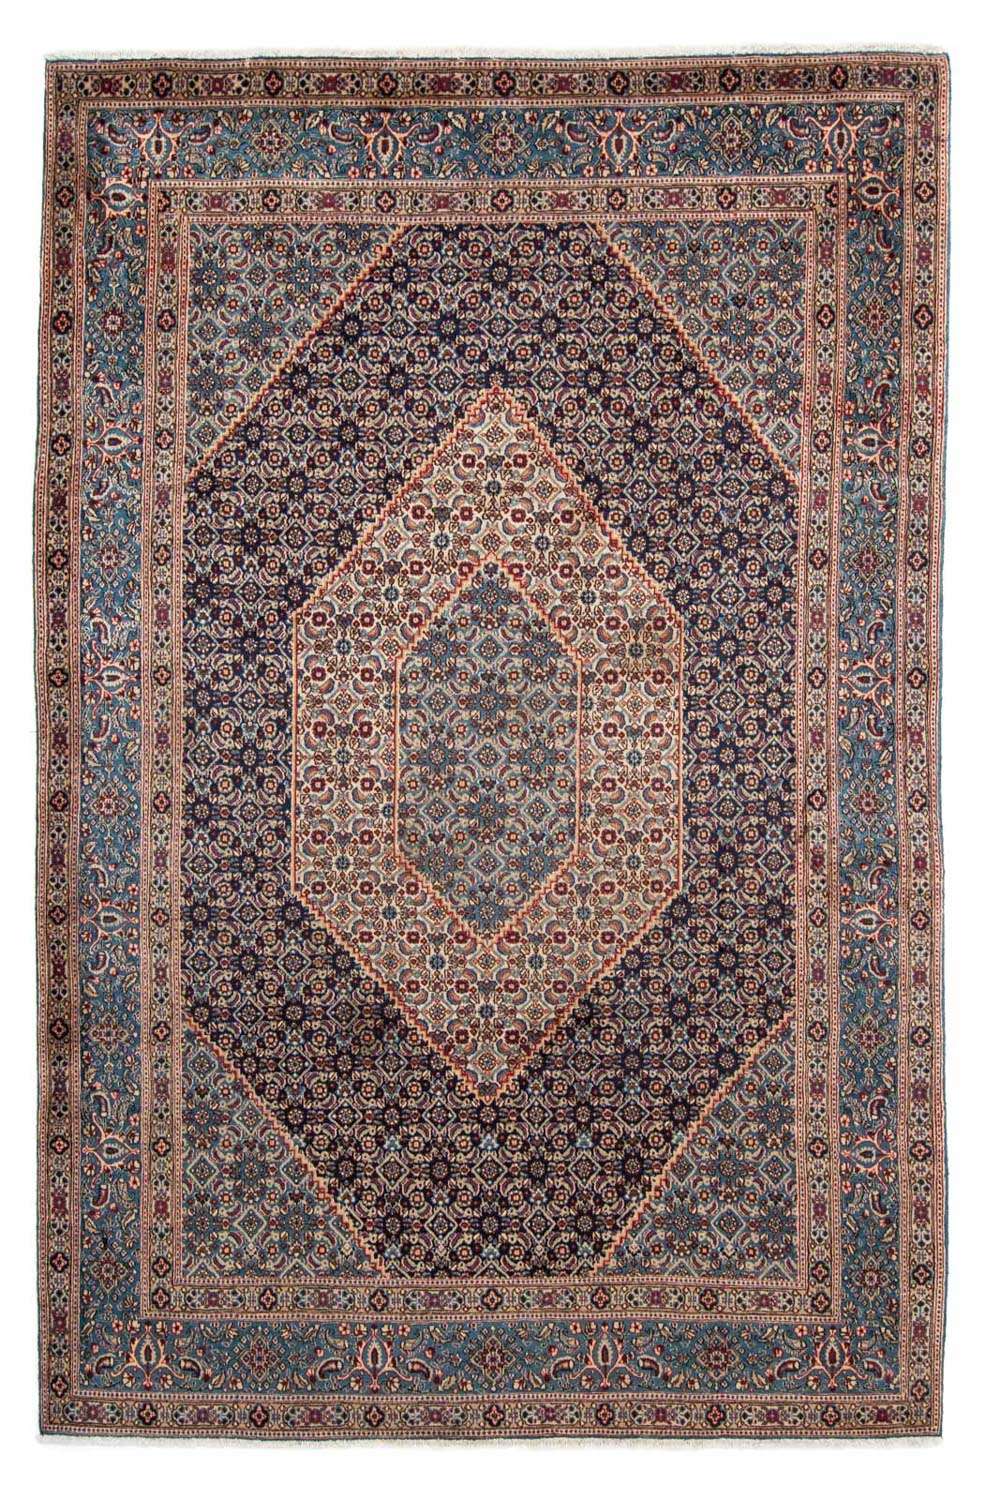 Dywan perski - Klasyczny - 305 x 208 cm - ciemnoniebieski